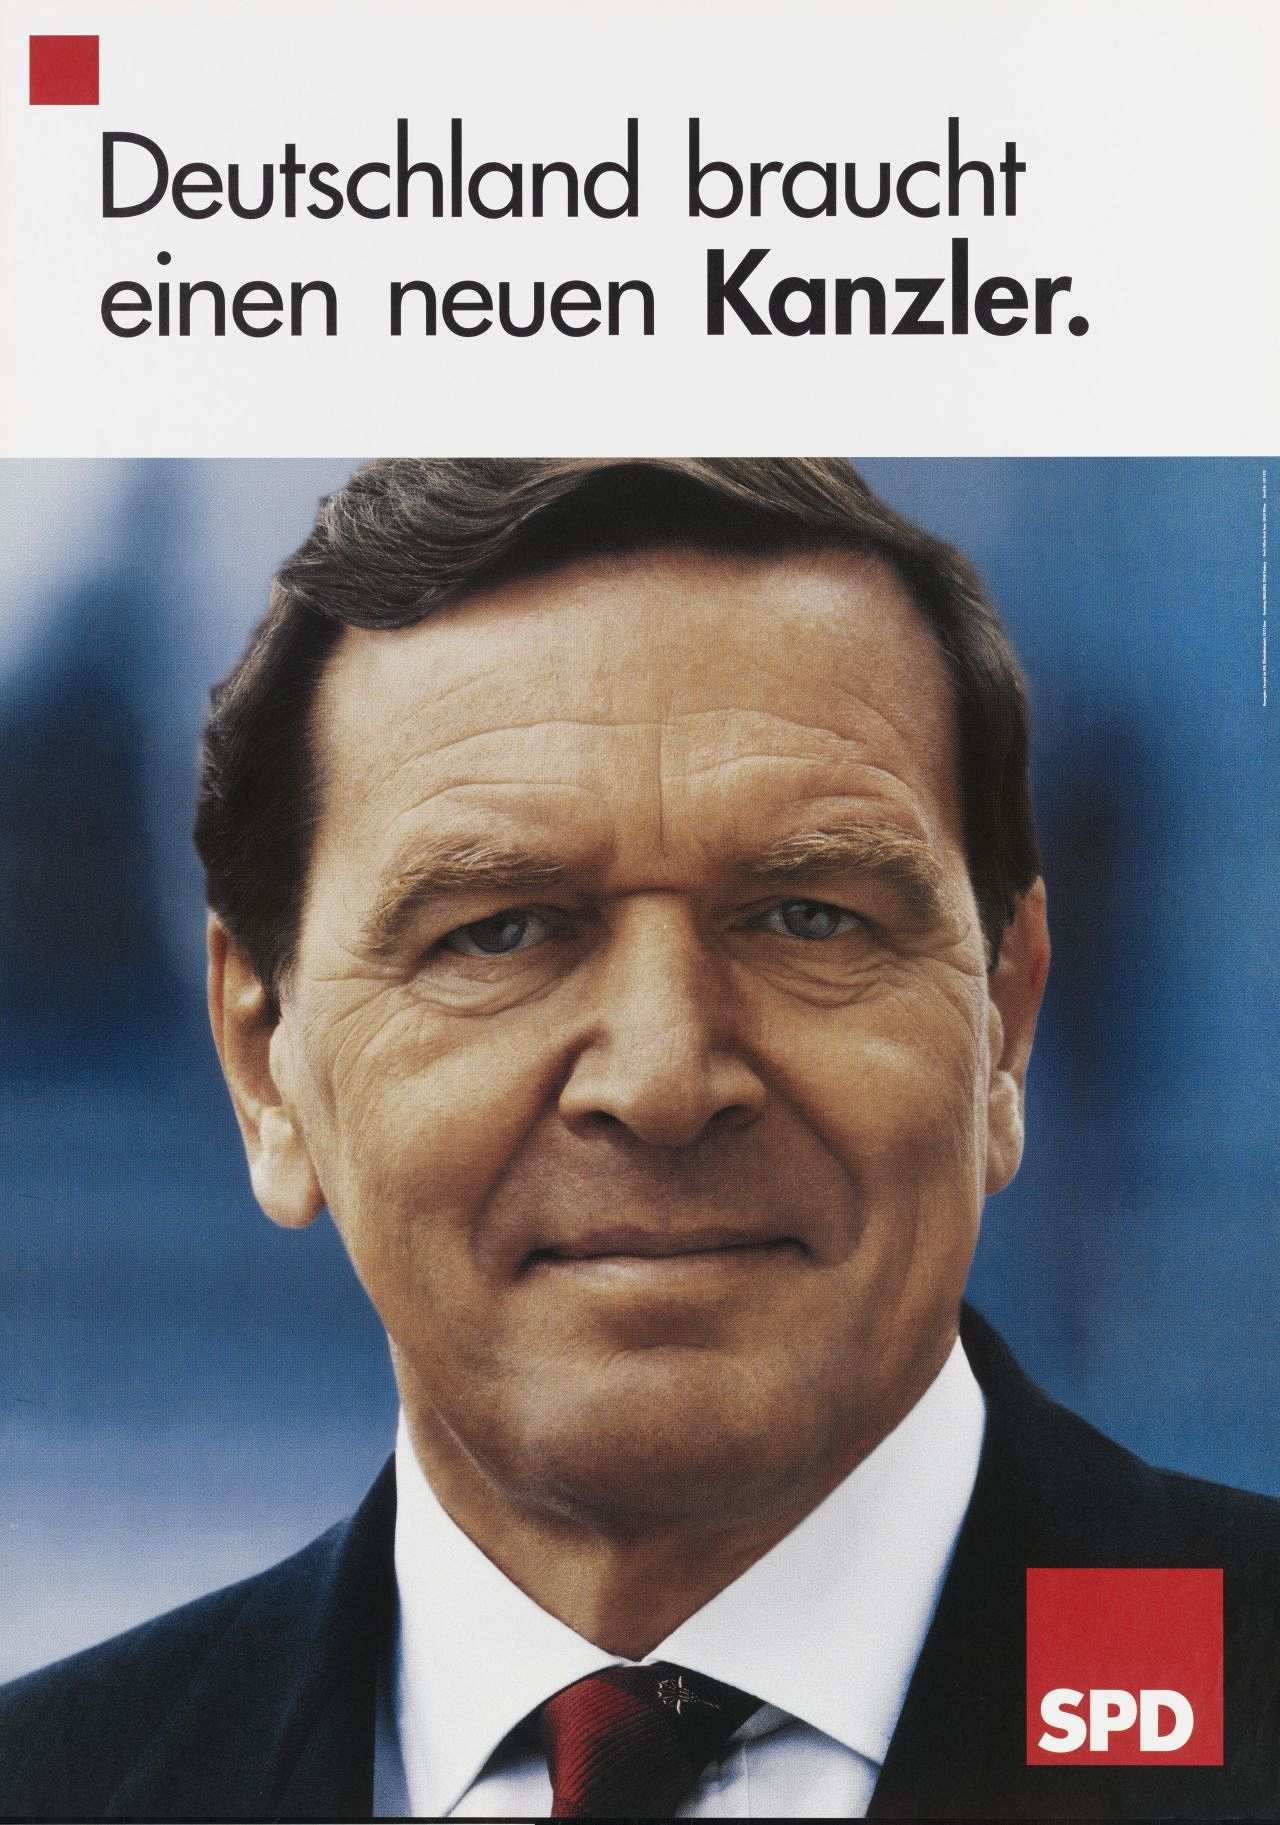 Motiv: Porträtfoto Gerhard Schröders (Farbfoto); im Bild unten rechts: SPD-Logo (rotes Quadrat, darin: SPD (weiß)); über dem Foto breiter weißer Streifen mit Text (schwarz): Deutschland braucht einen neuen Kanzler.